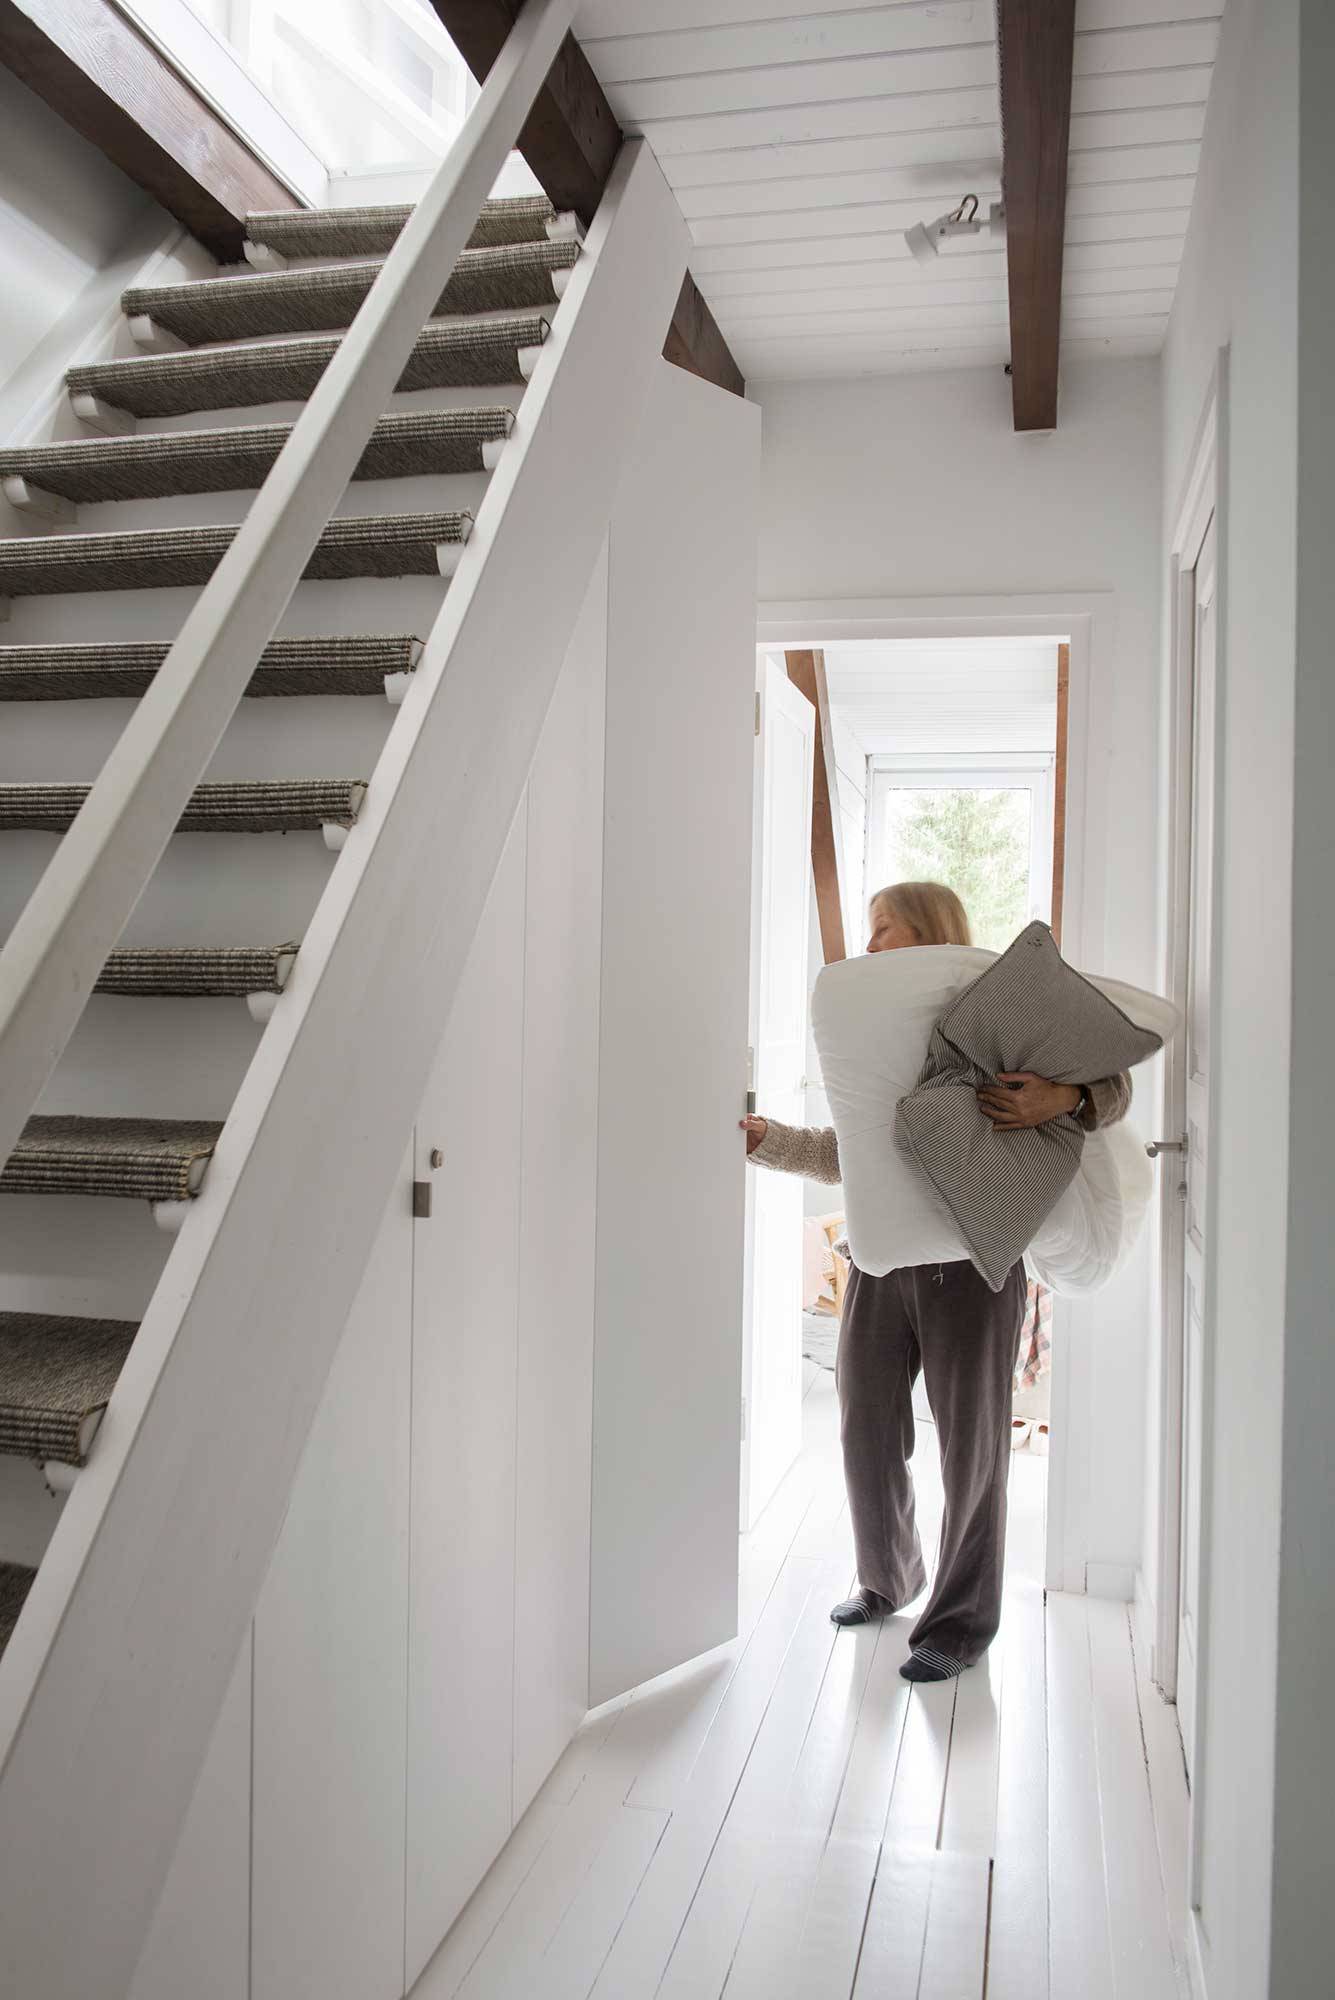 Pasillo de casa alpina blanca con armarios integrados bajo la escalera y mujer con ropa de cama